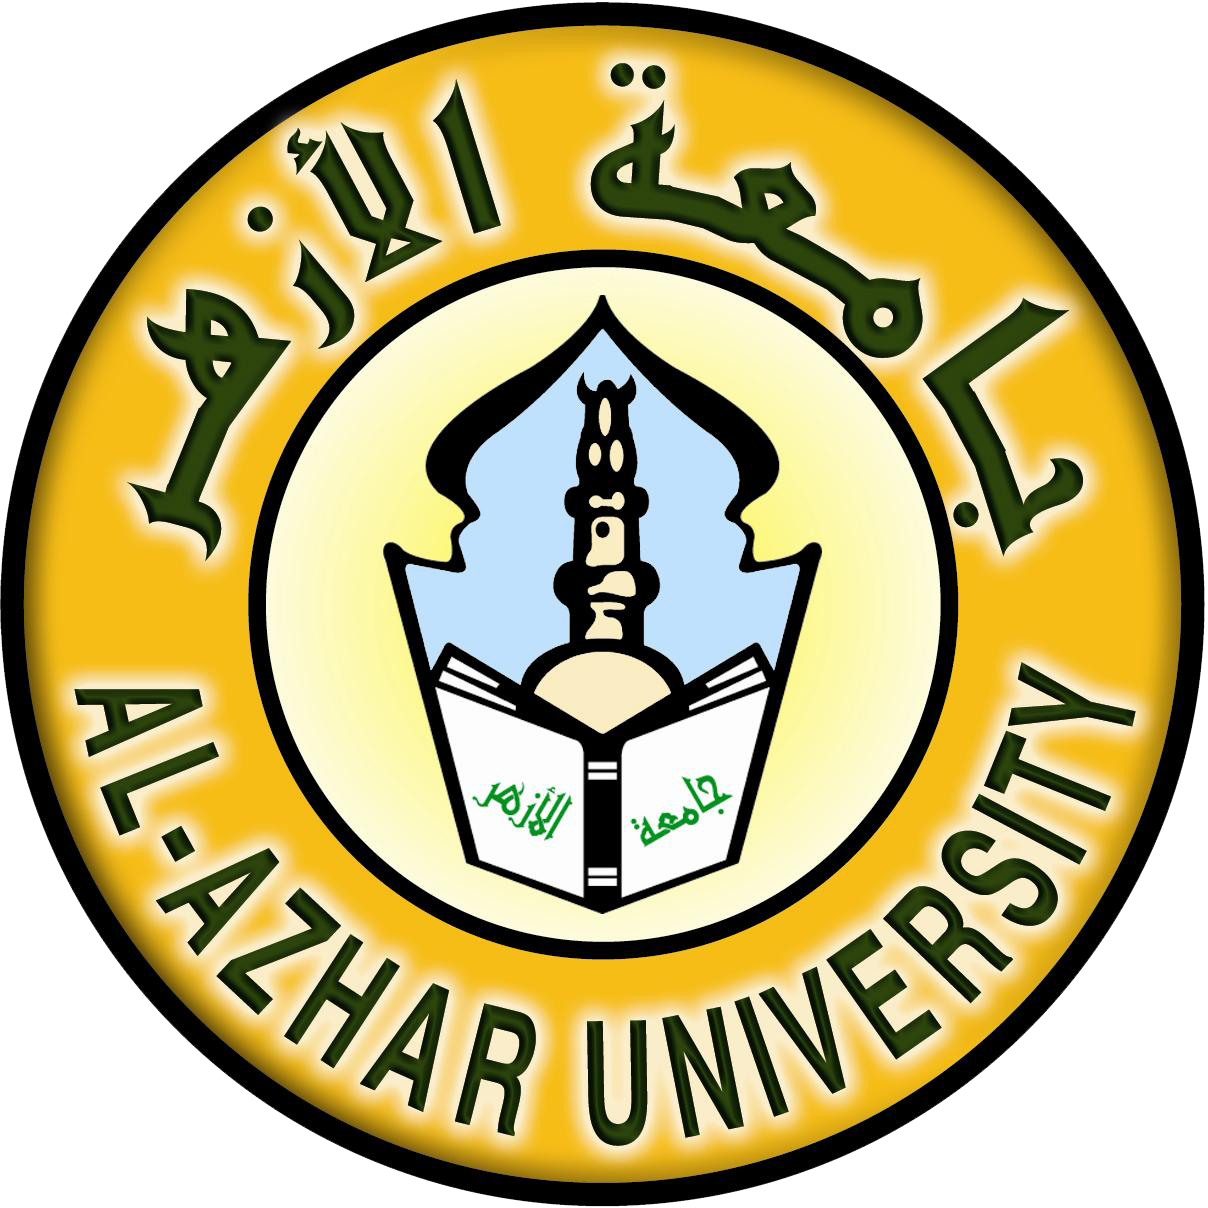 Al university. Университет Аль-Азхар в Египте. Университет Аль-Азхар logo. Исламский университет Азхар. Логотип университета.